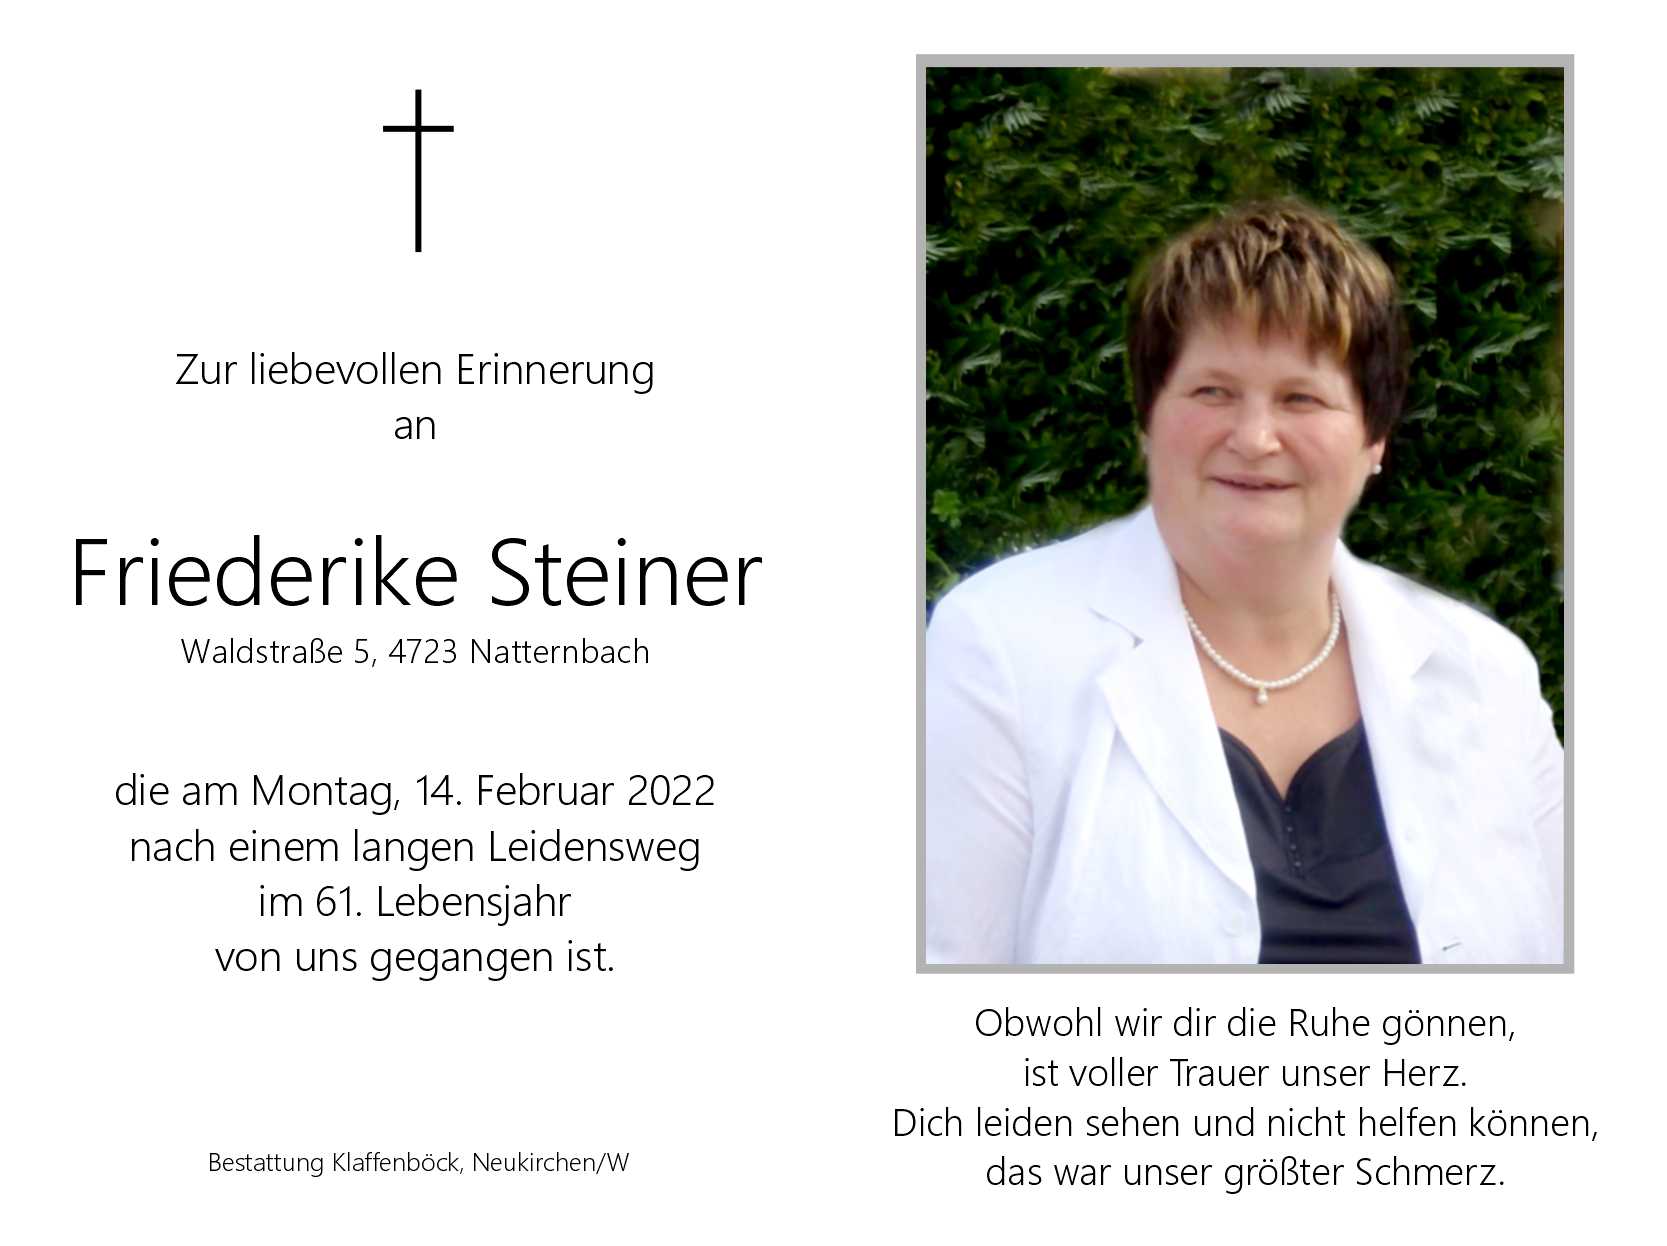 Friederike  Steiner